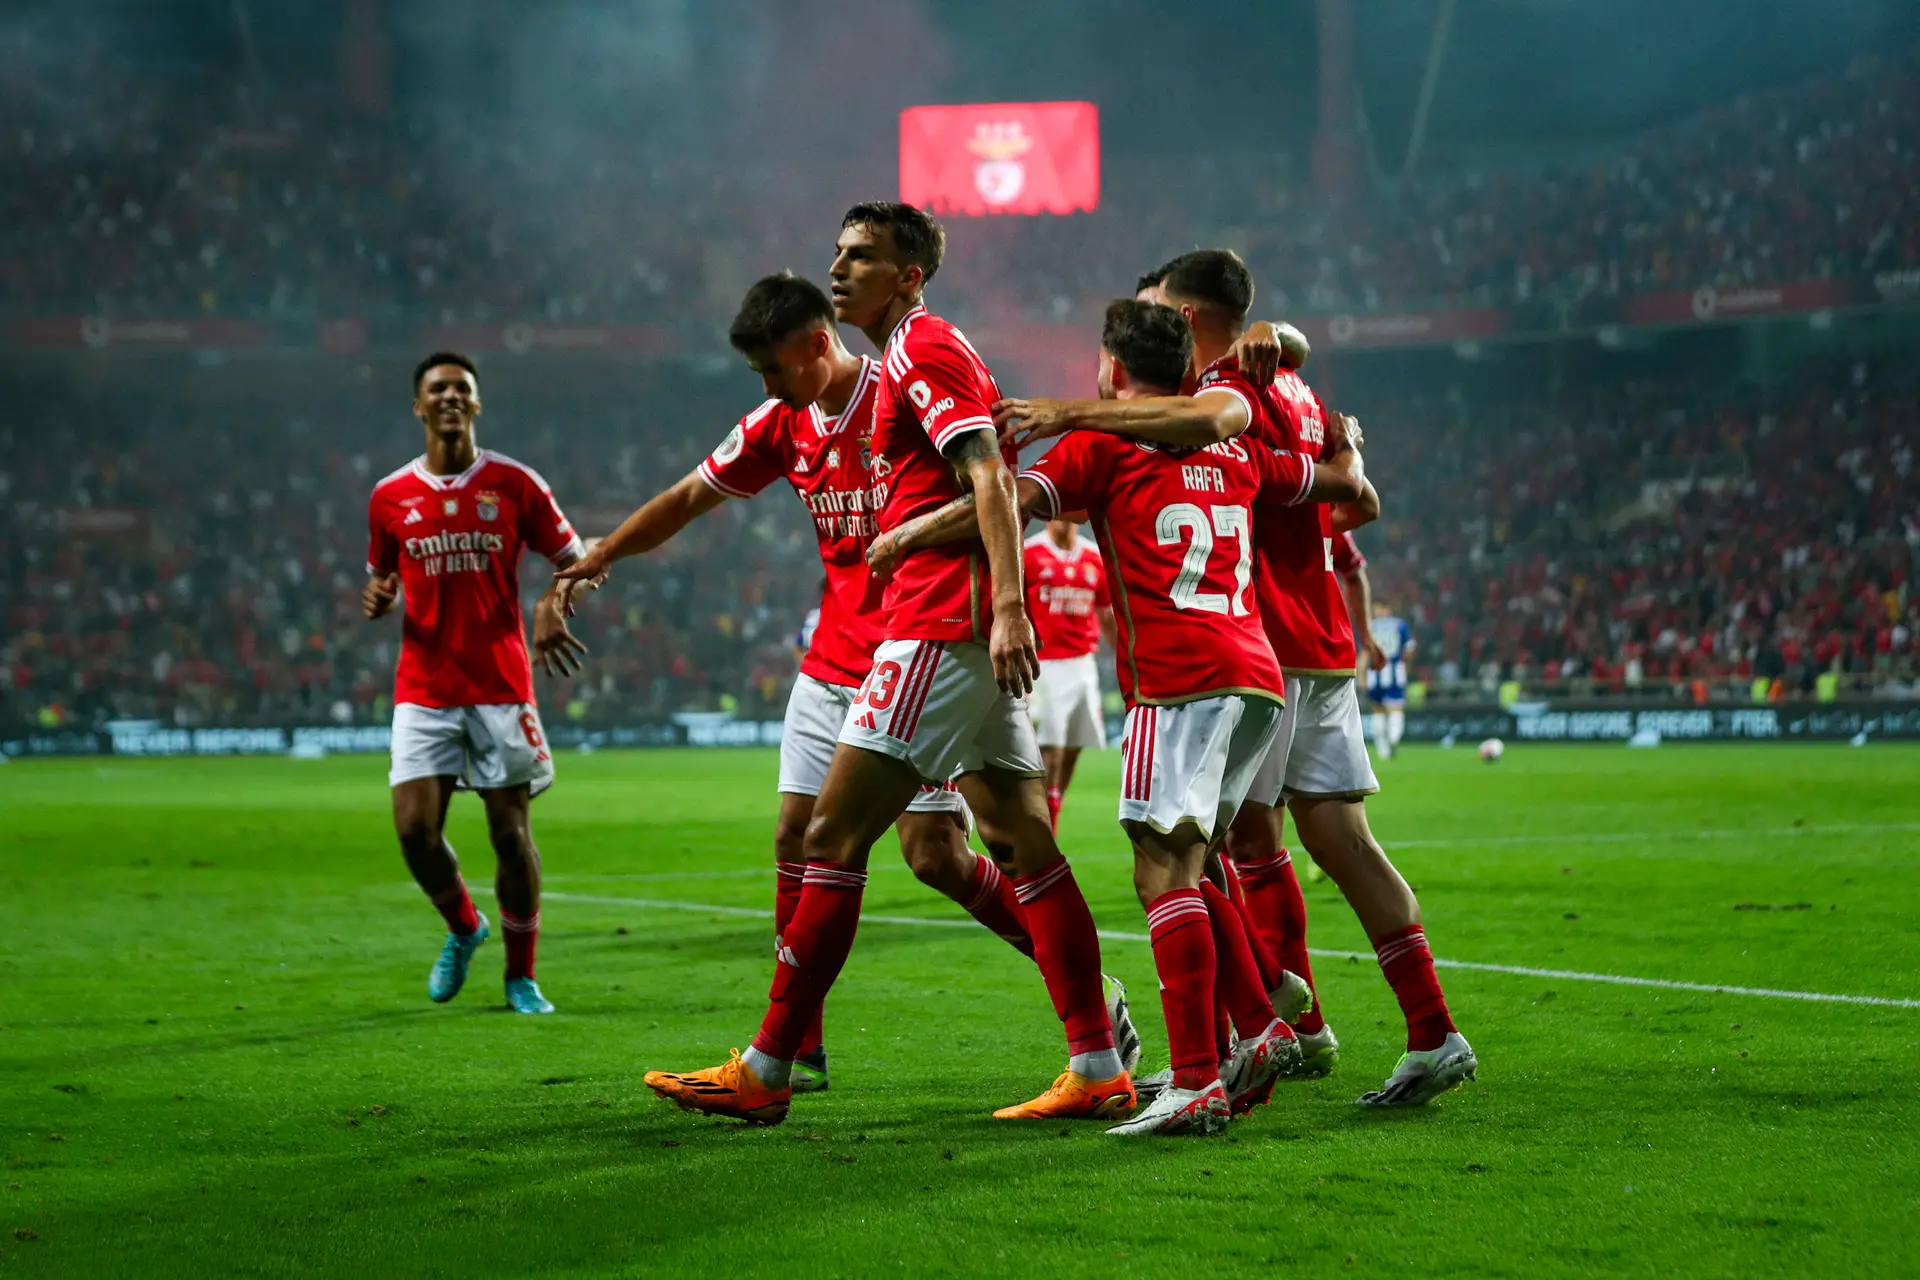 Novo Mundial de clubes em Junho de 2025, com Benfica e FC Porto confirmados, Futebol internacional